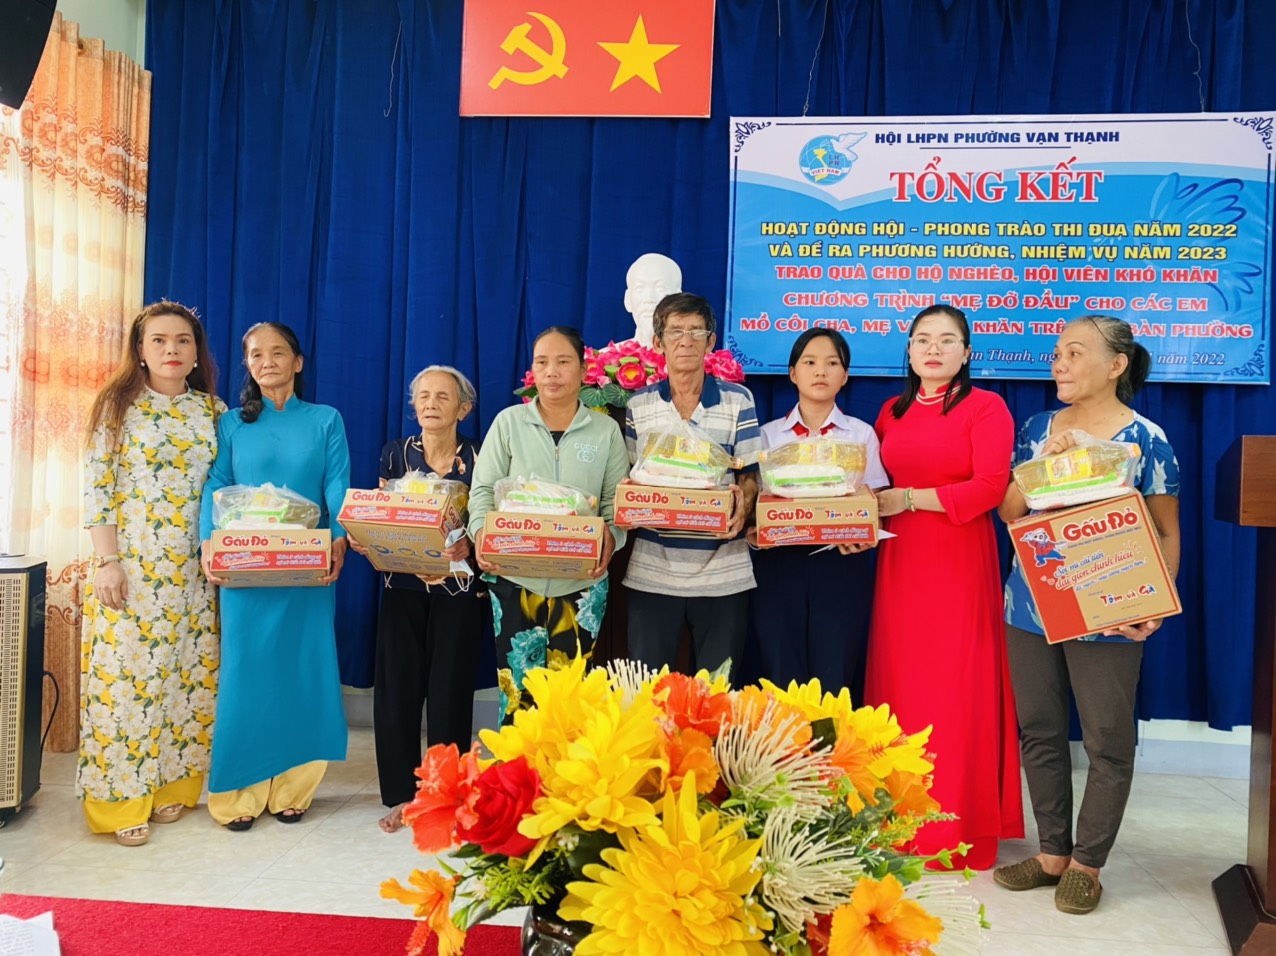 Tại hội nghị, Hội LHPN phường Vạn Thạnh còn trao các suất quà cho người dân có hoàn cảnh khó. khăn.